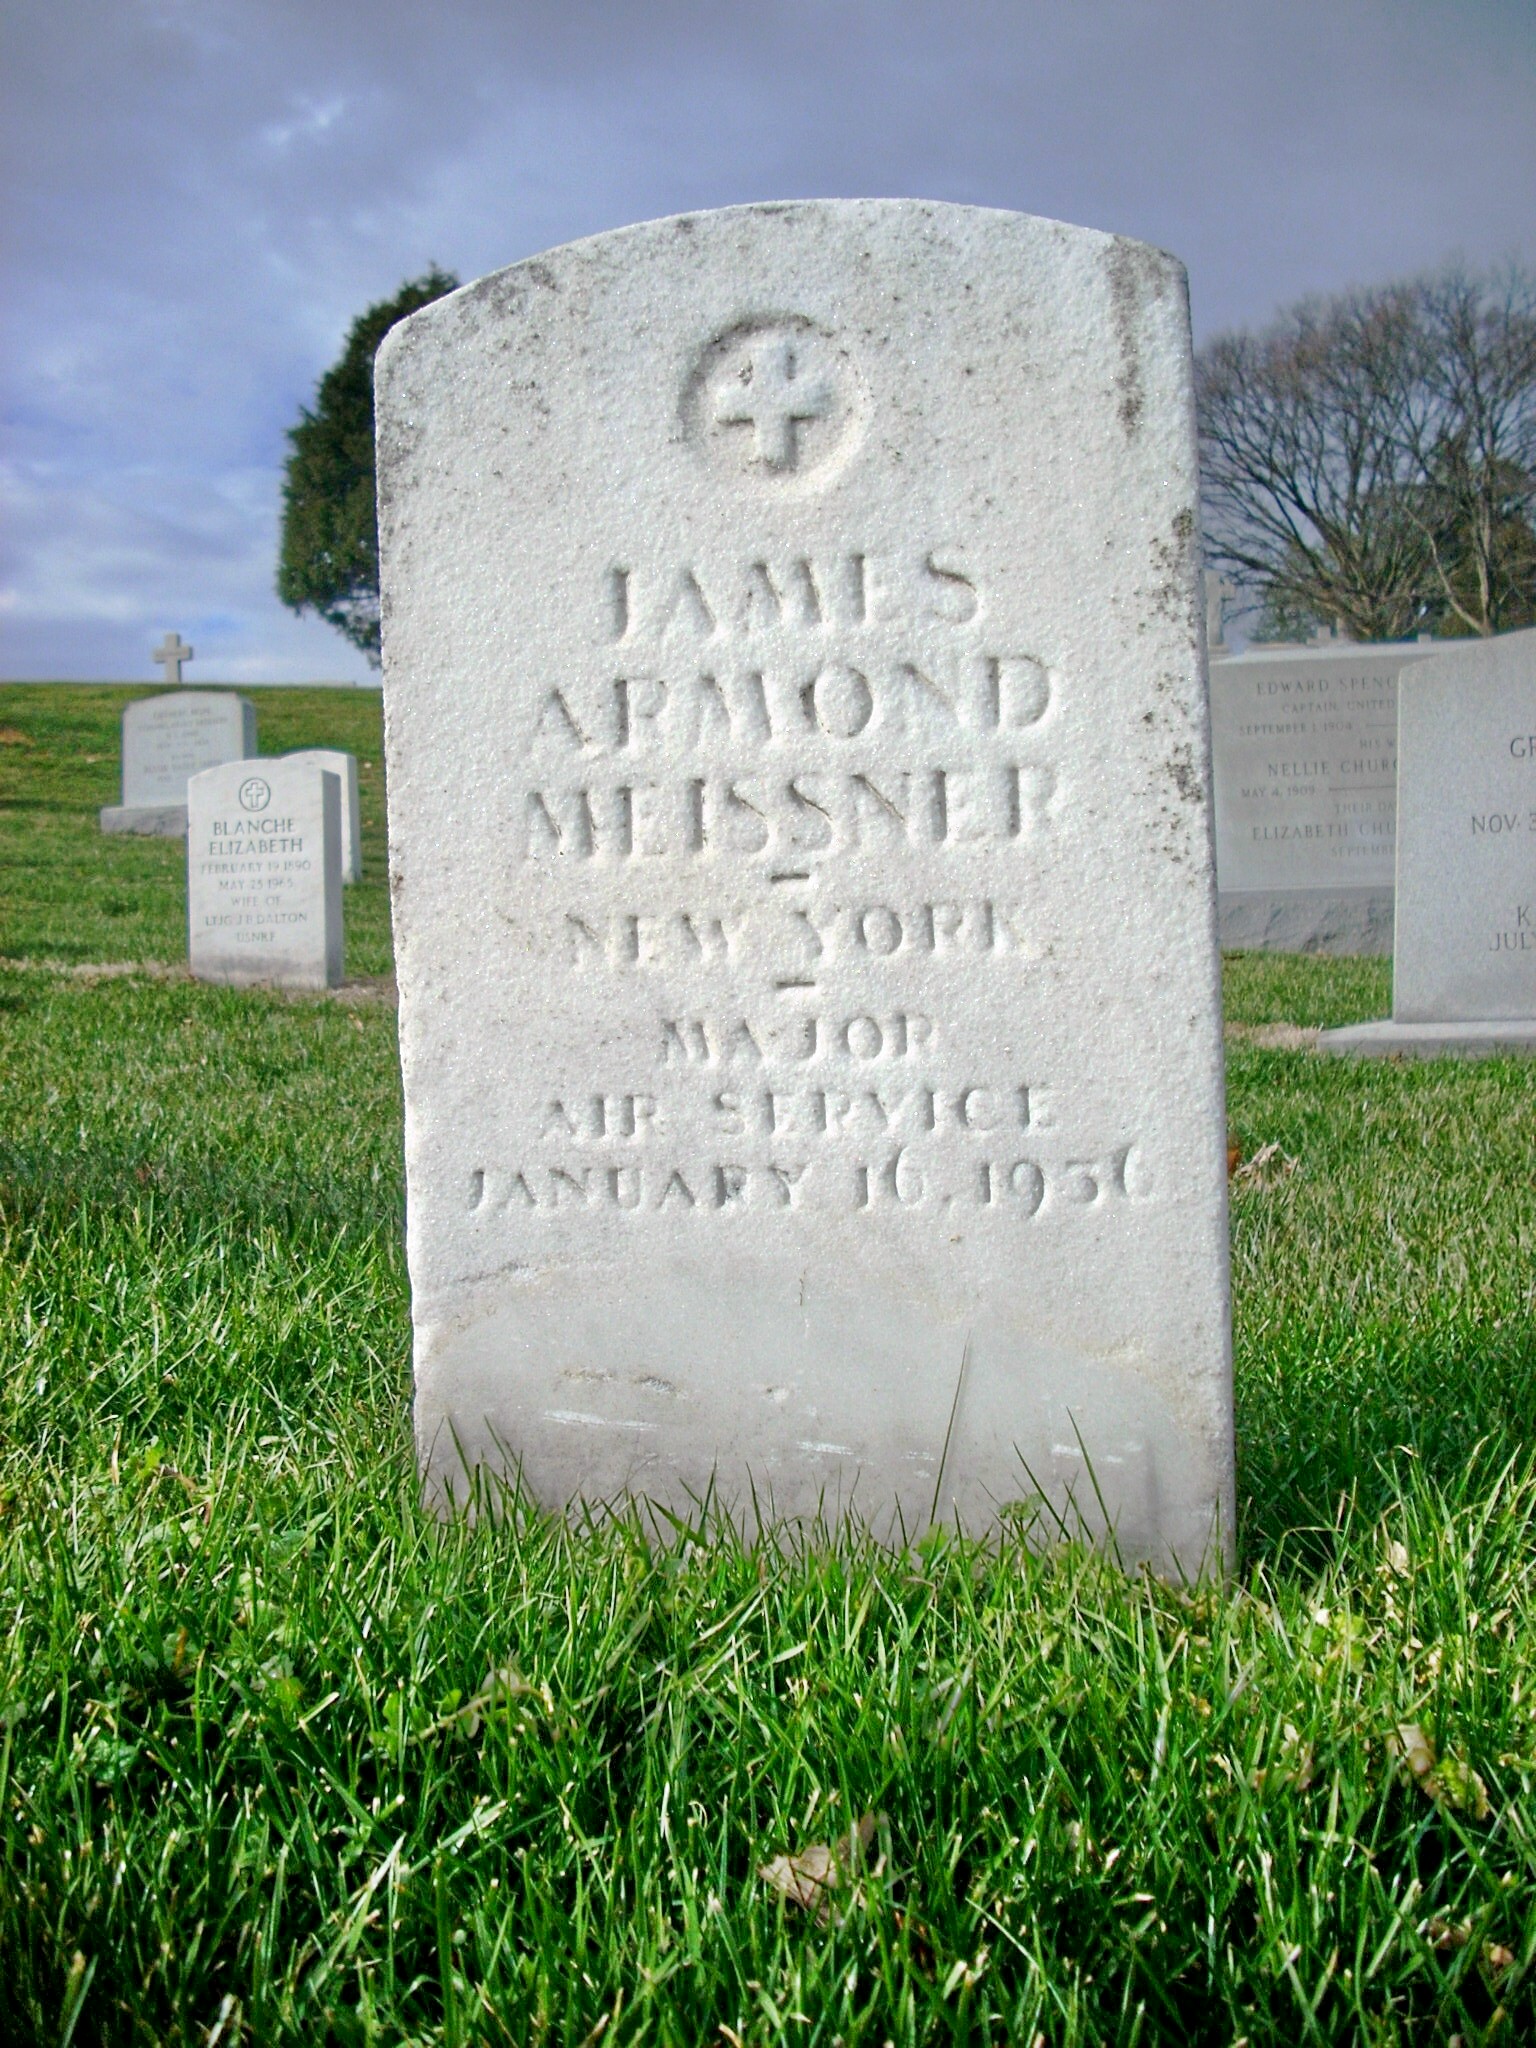 jameissner-gravesite-photo-january-2009-011